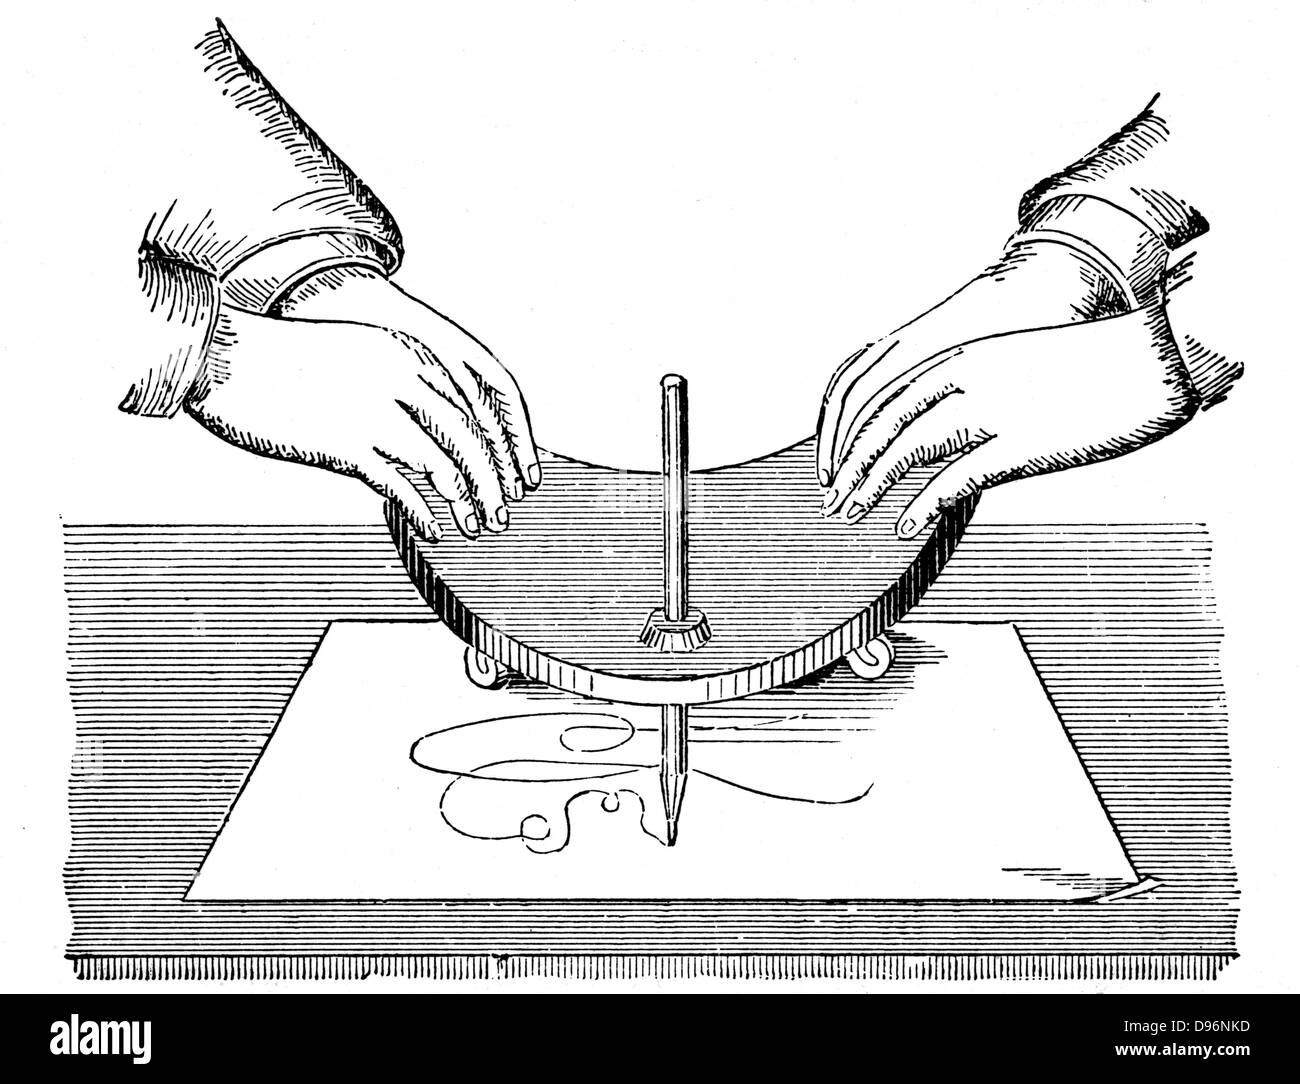 Ou Planchette Ouija board, c1880. Méthode d'utilisation de la planchette pour spirit écrit pendant une séance. À partir de 'Le Dictionnaire pratique de la mécanique", l'éditeur Edward H Knight (New York et Londres, c1880). La gravure sur bois. Banque D'Images